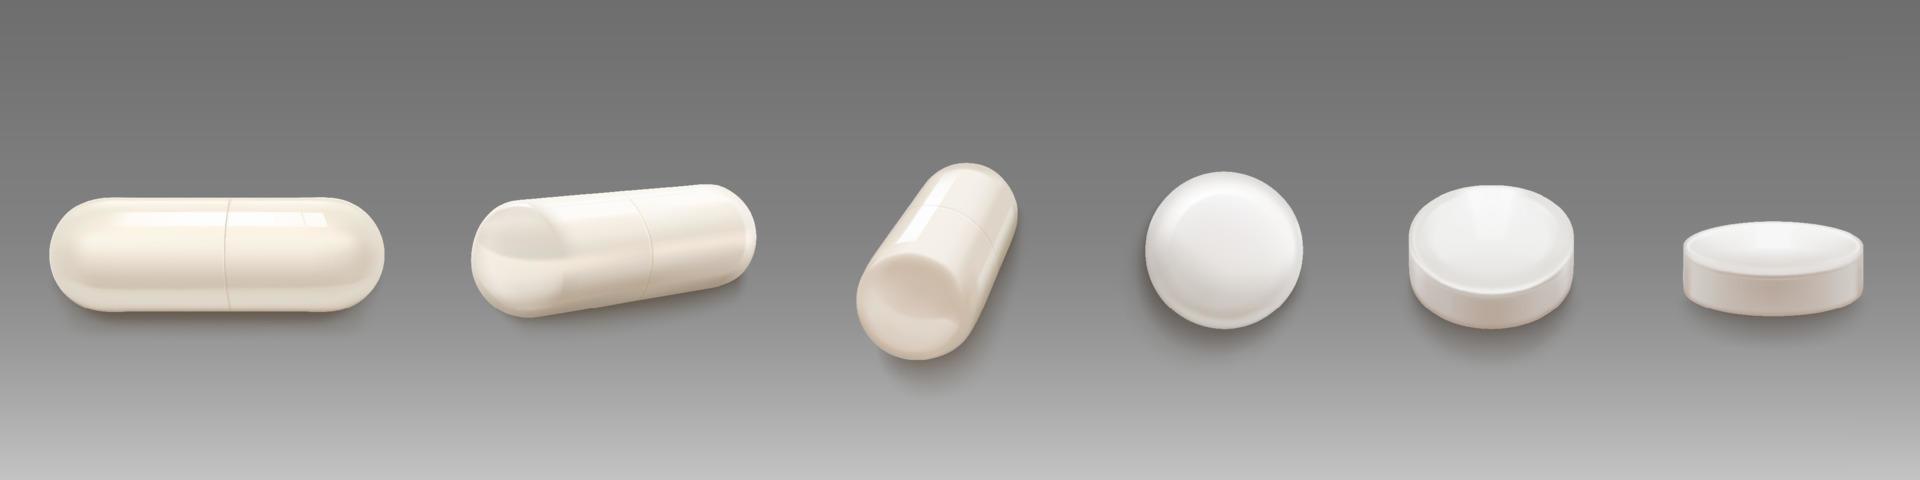 bianca medico pillole e capsule vettore